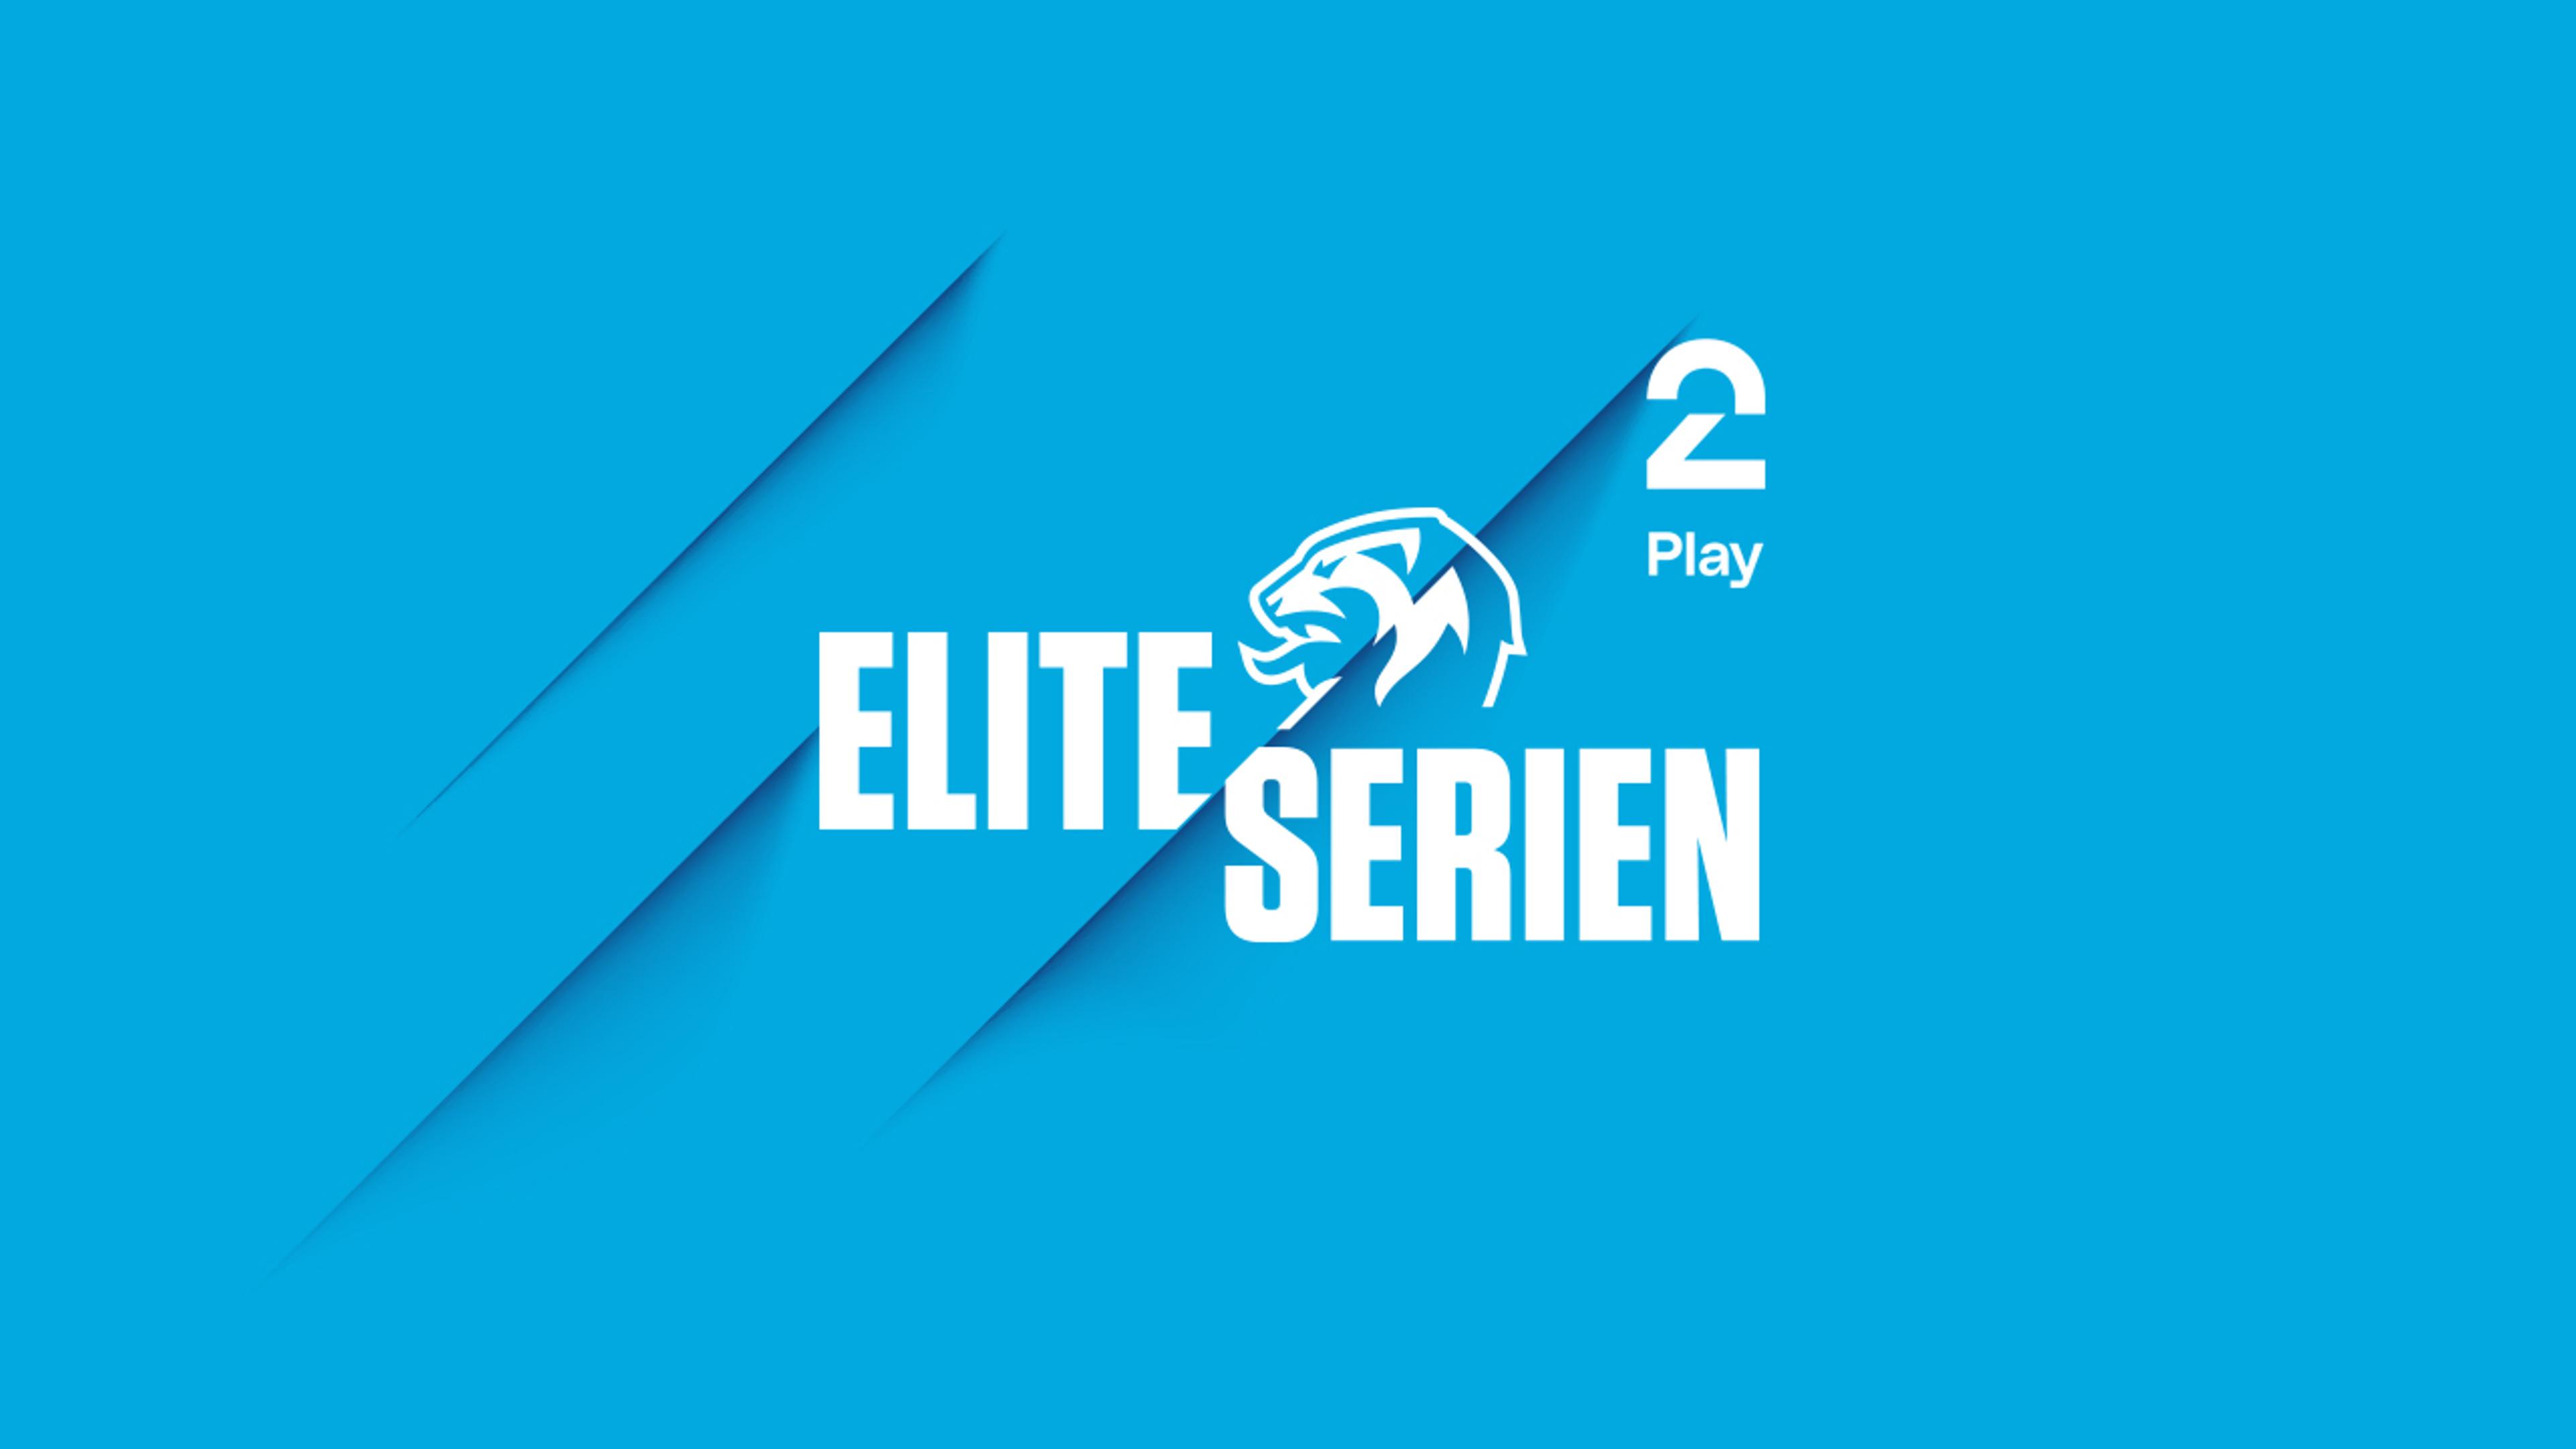 Eliteserien-logo og TV 2 Play logo på blå bakgrunn.